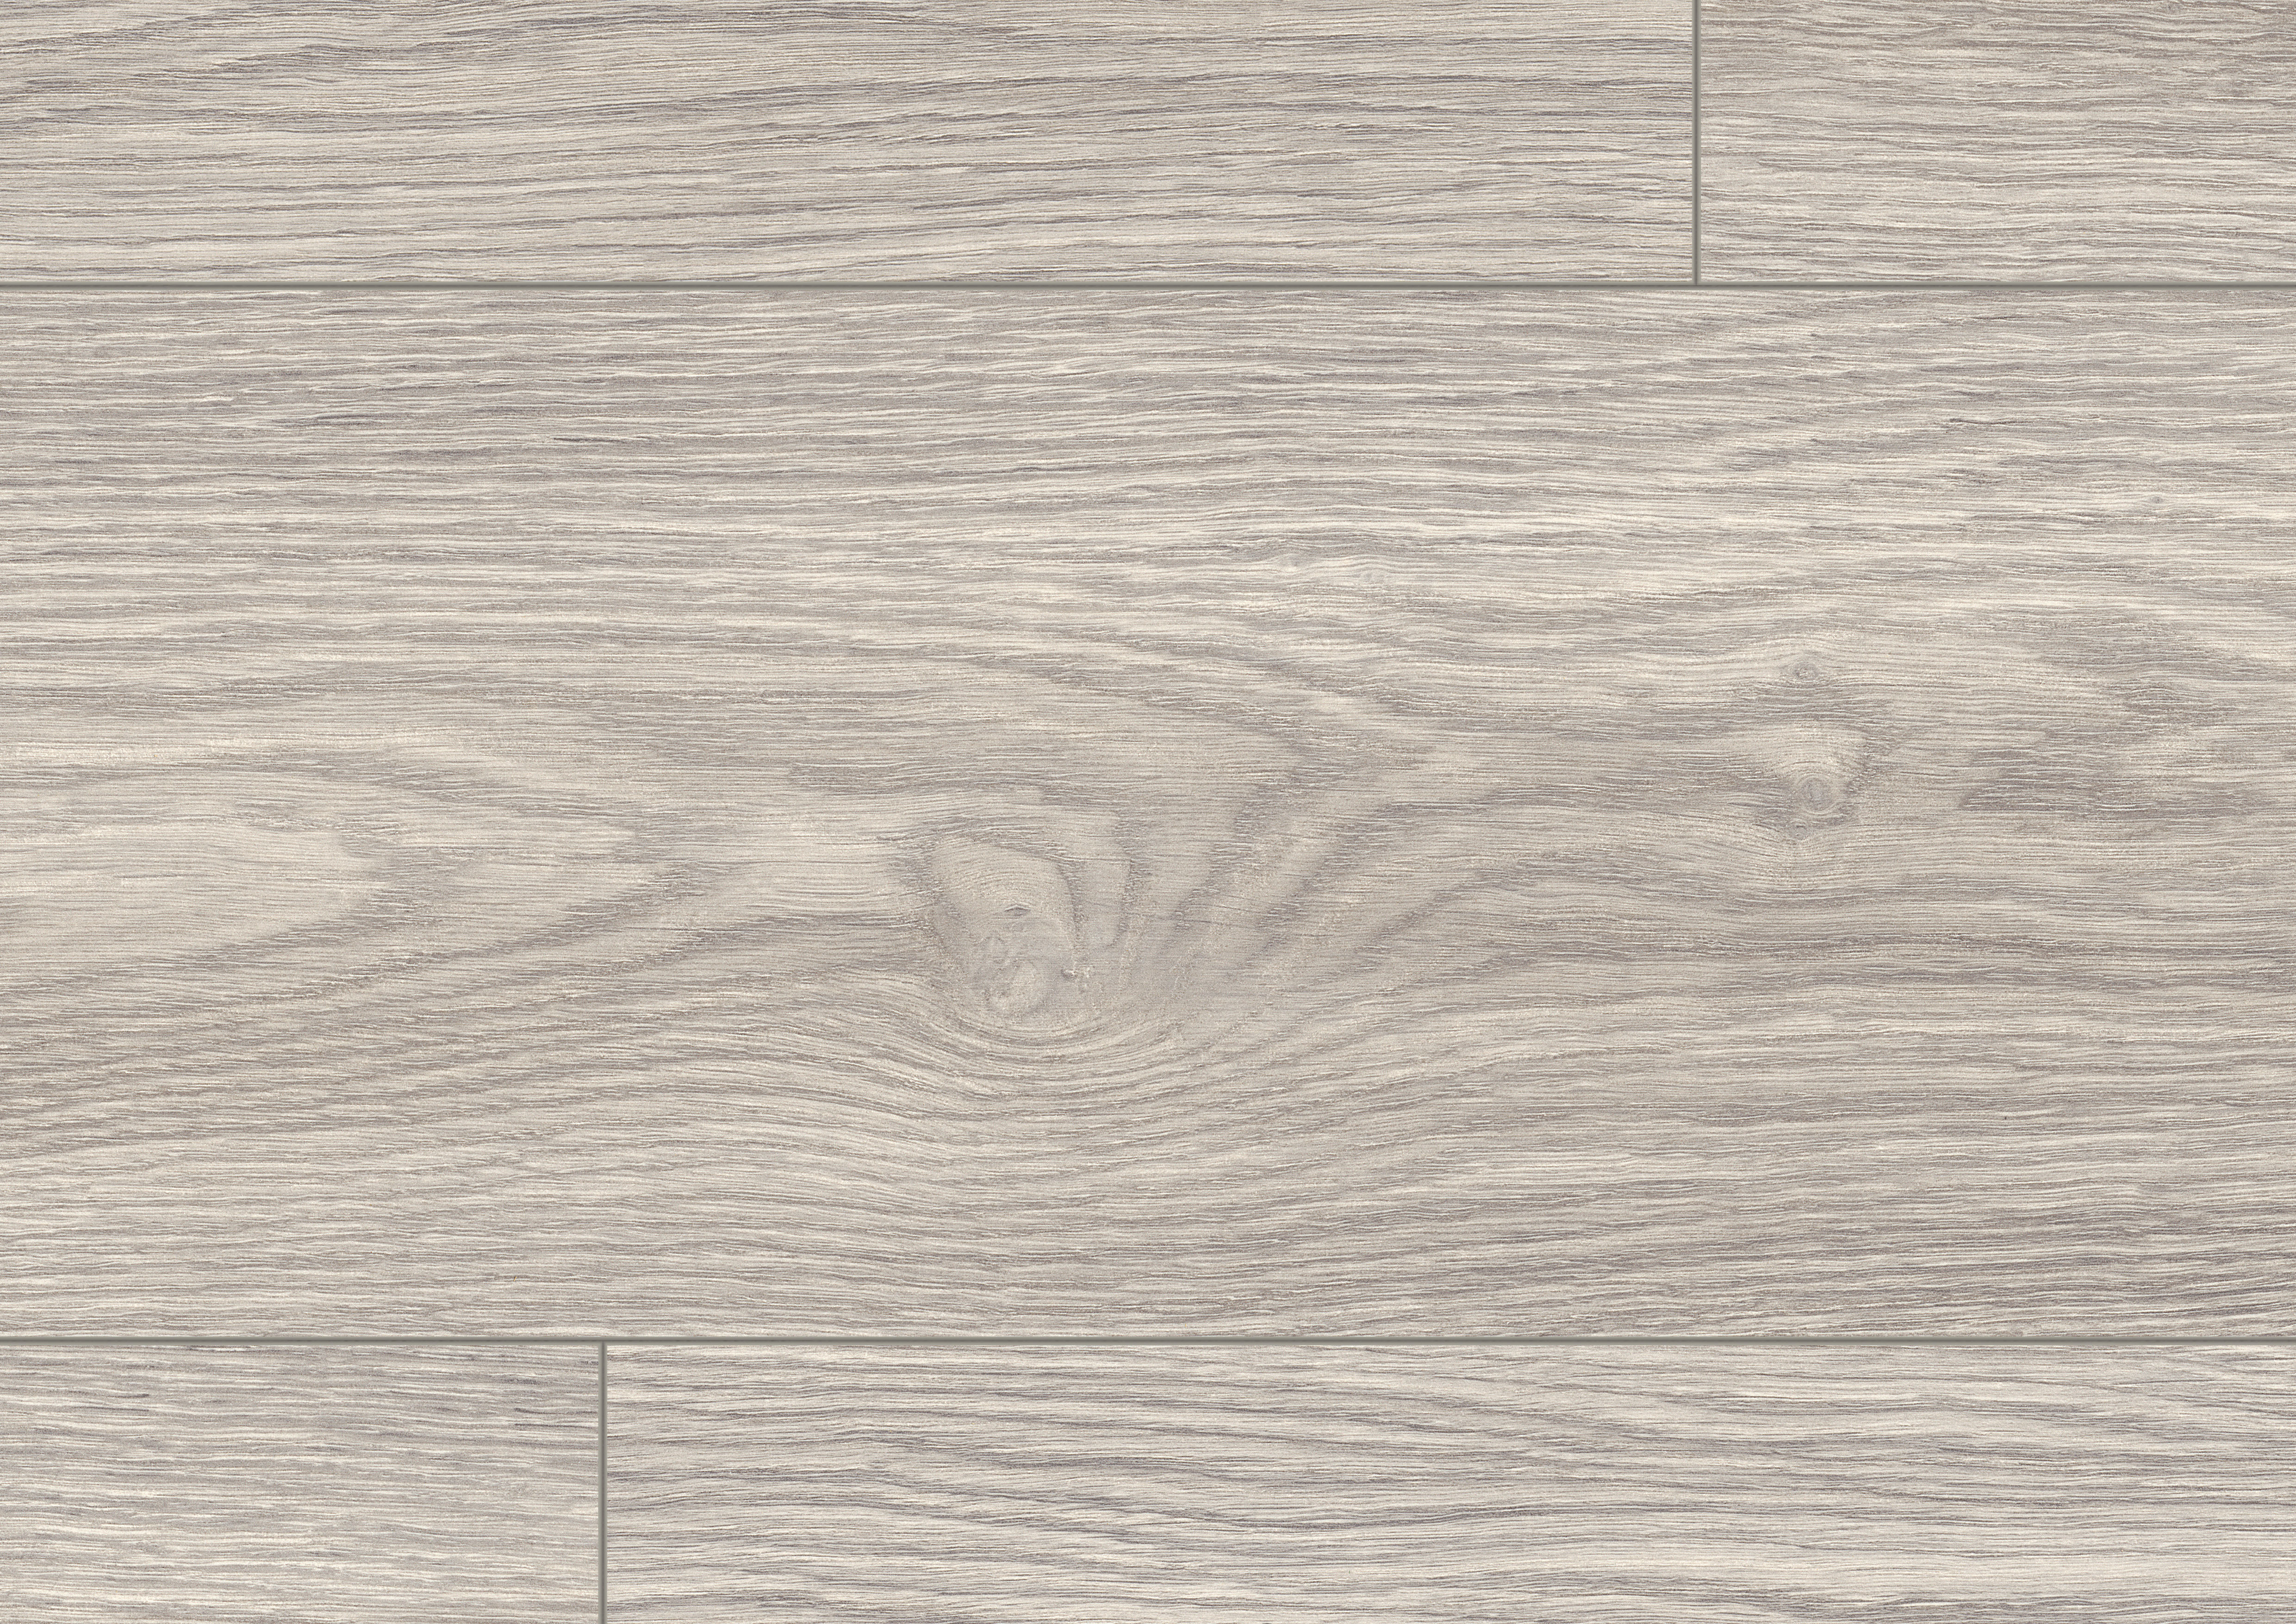 EPL178 Rovere Soria grigio chiaro – Pavimenti in laminato EGGER